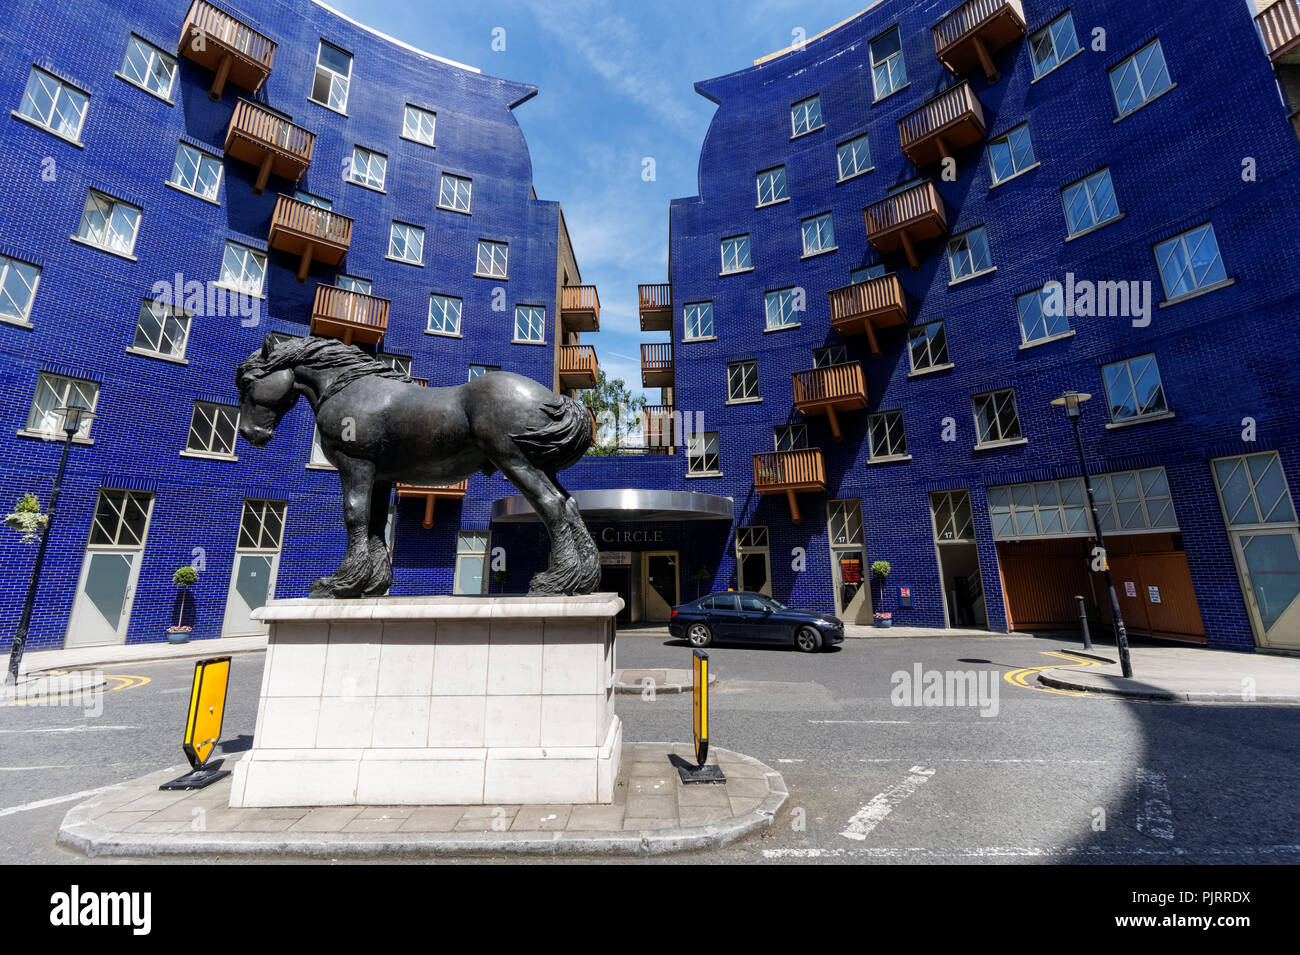 Le Cercle de l'immobilier avec une sculpture de Jacob le Dray Horse, London England Royaume-Uni UK Banque D'Images